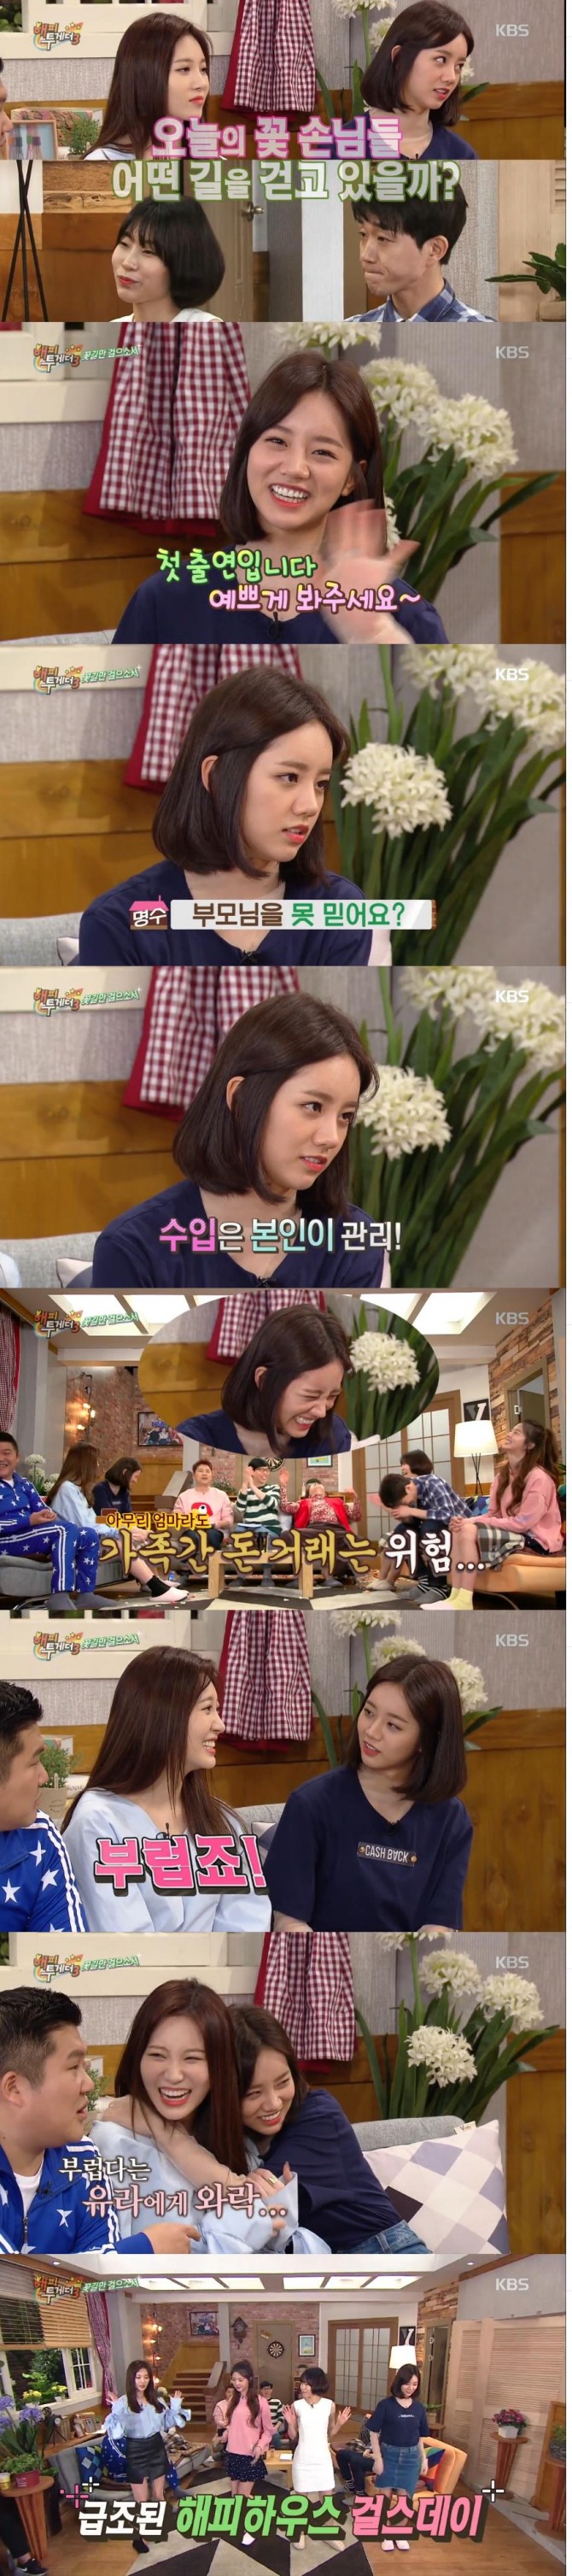 14일 밤 방송된 KBS2 '해피투게더3'에서 혜리와 유라, 이세영, 최성원이 게스트로 출연해 솔직한 입담을 뽐냈다./사진=KBS 방송 캡처  